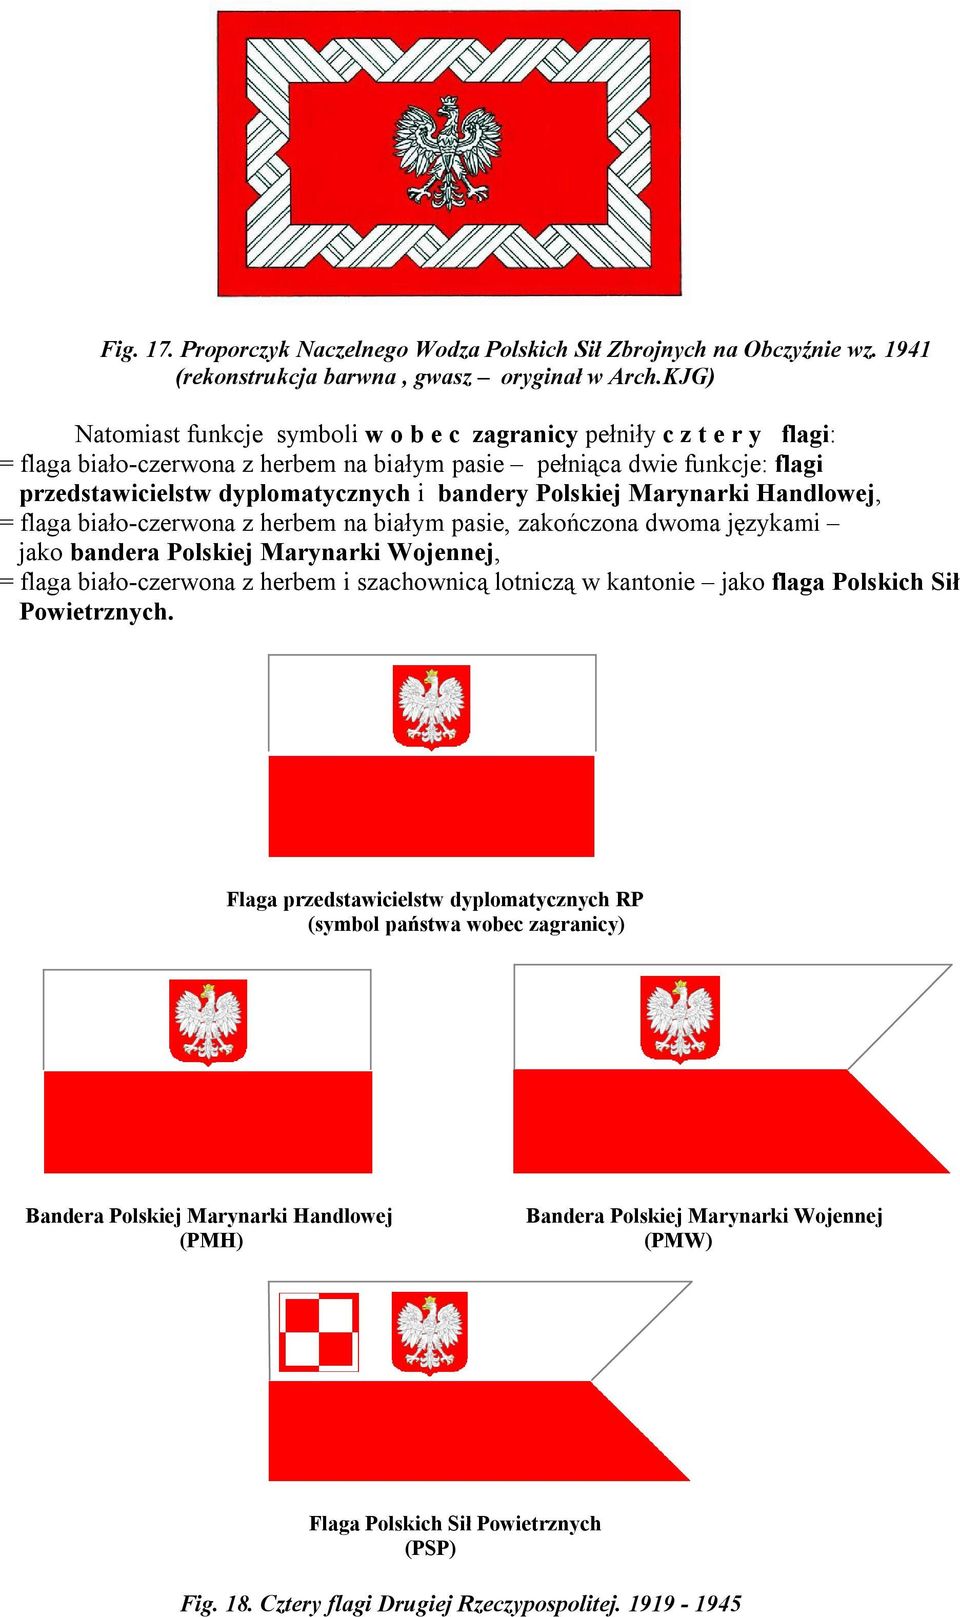 Polskiej Marynarki Handlowej, = flaga biało-czerwona z herbem na białym pasie, zakończona dwoma językami jako bandera Polskiej Marynarki Wojennej, = flaga biało-czerwona z herbem i szachownicą